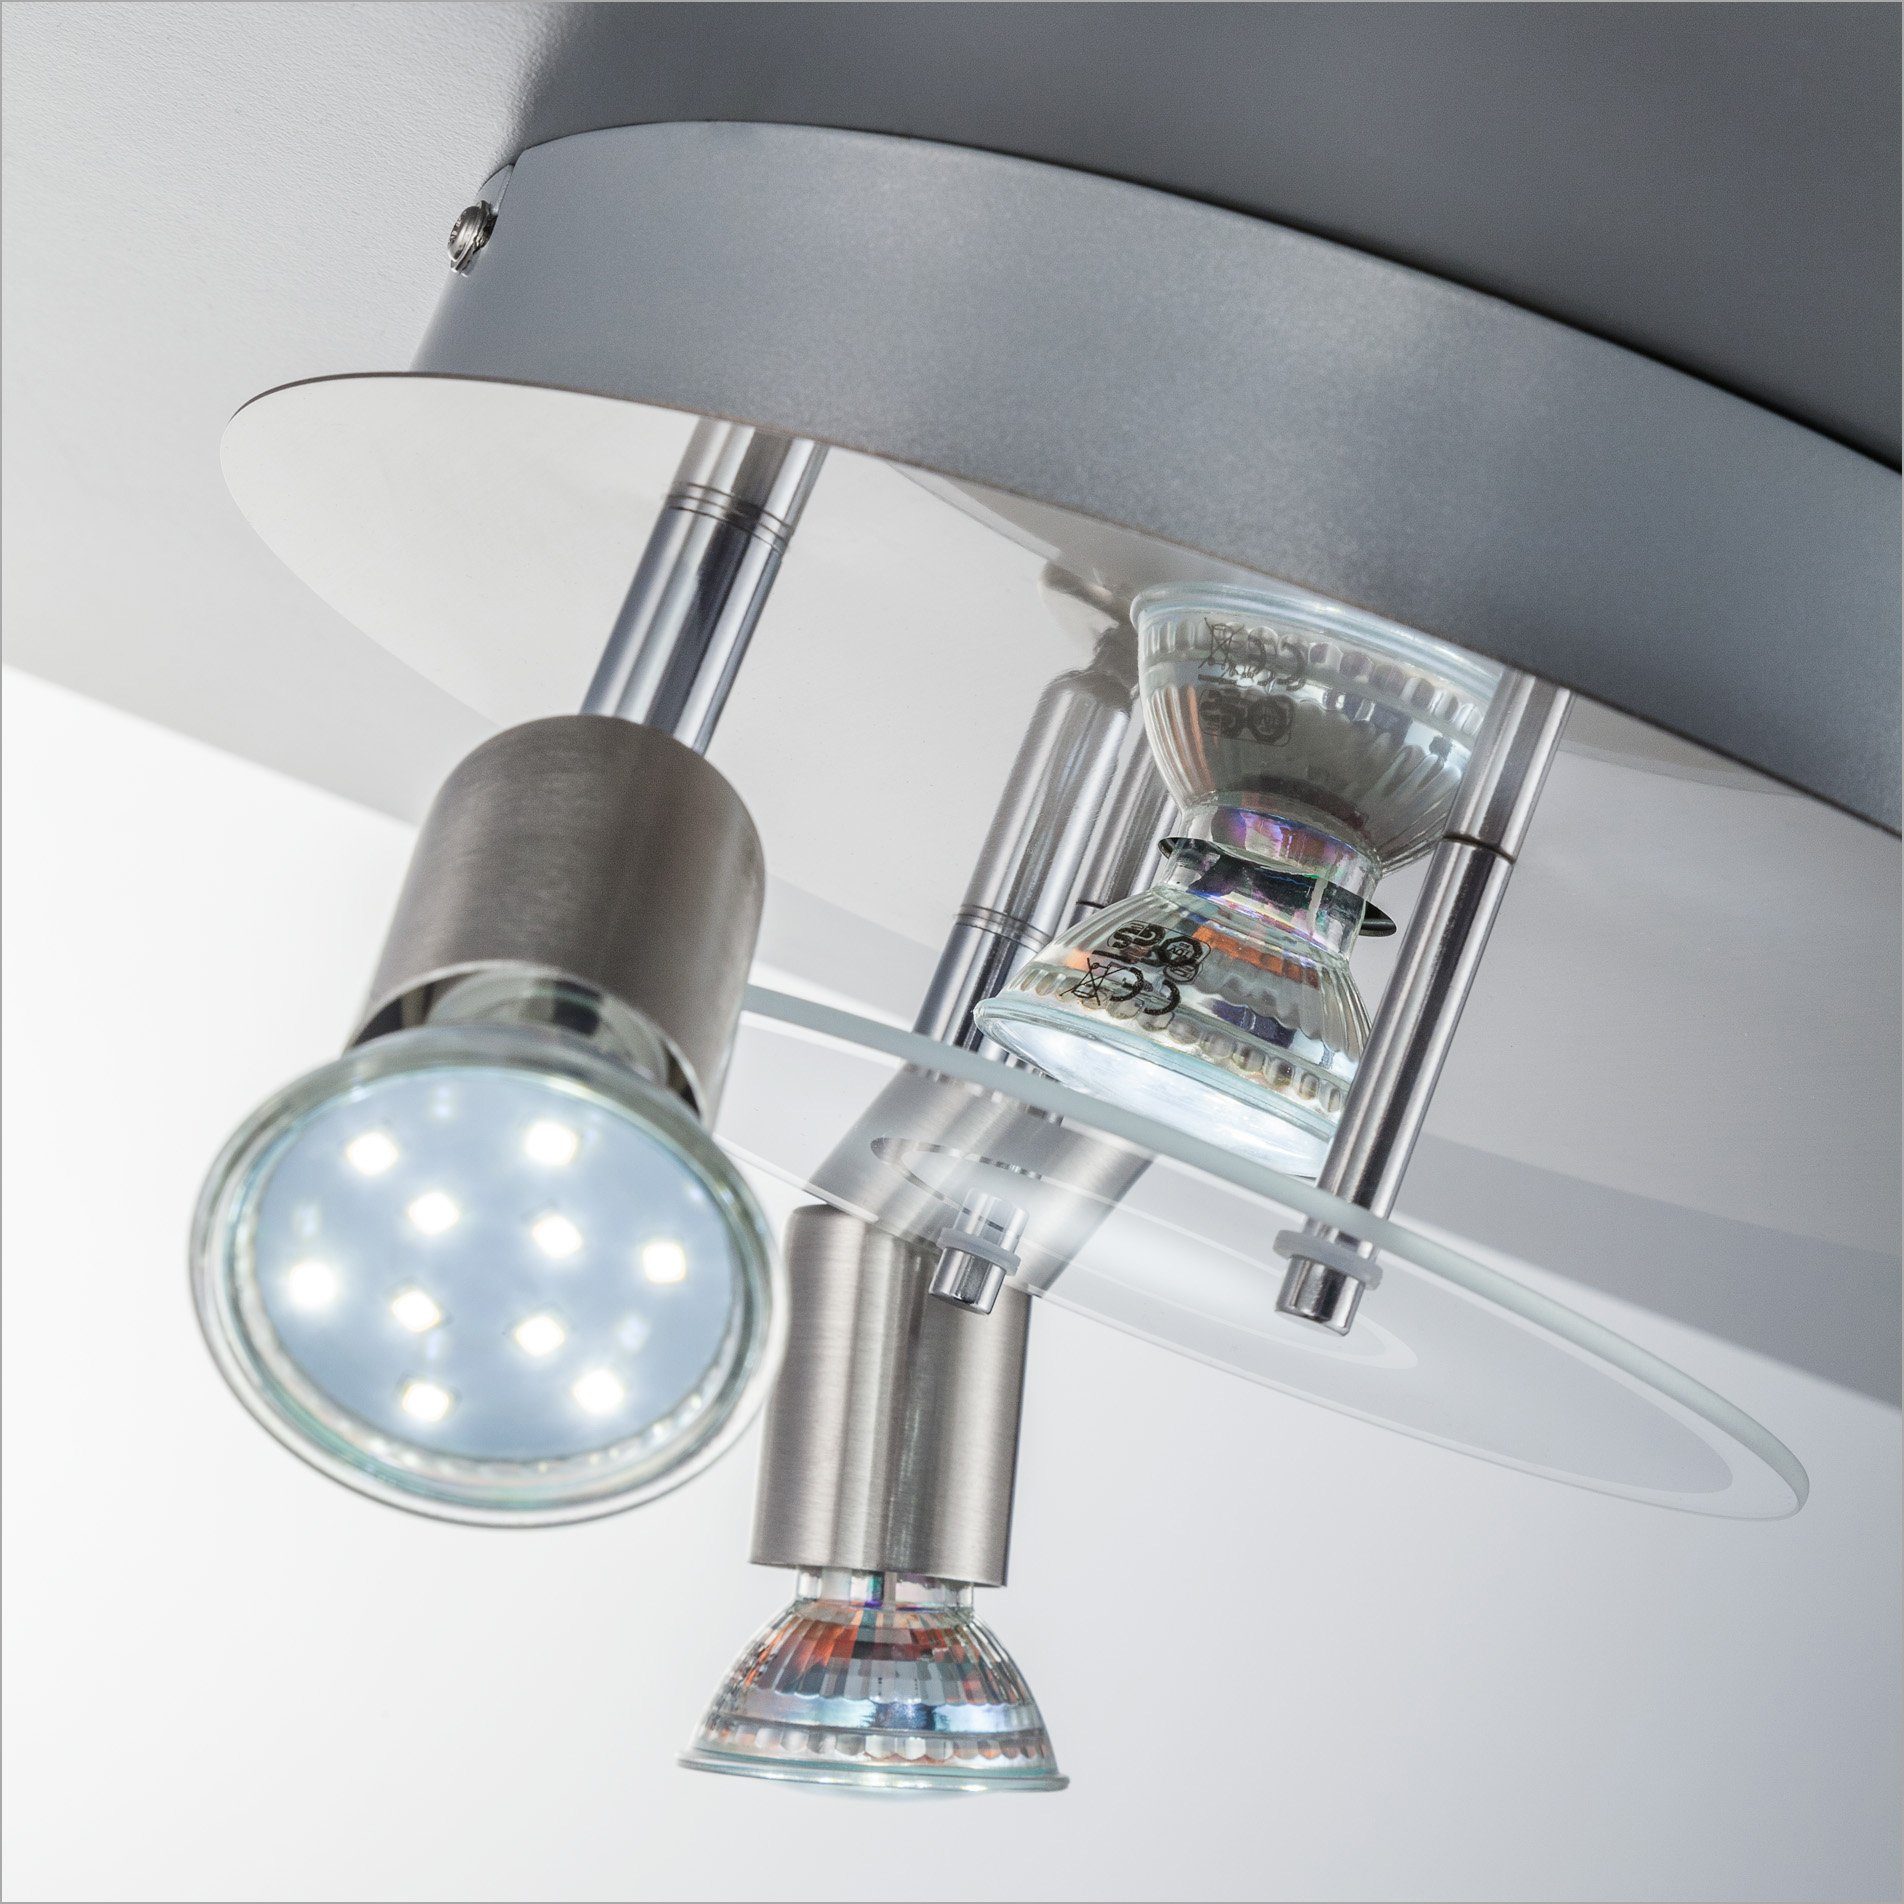 B.K.Licht LED GU10, wechselbar, Warmweiß, 250lm LED Deckenstrahler, Deckenleuchte, inkl. Glas, Strahler, Leuchtmittel rund, Metall, 3W